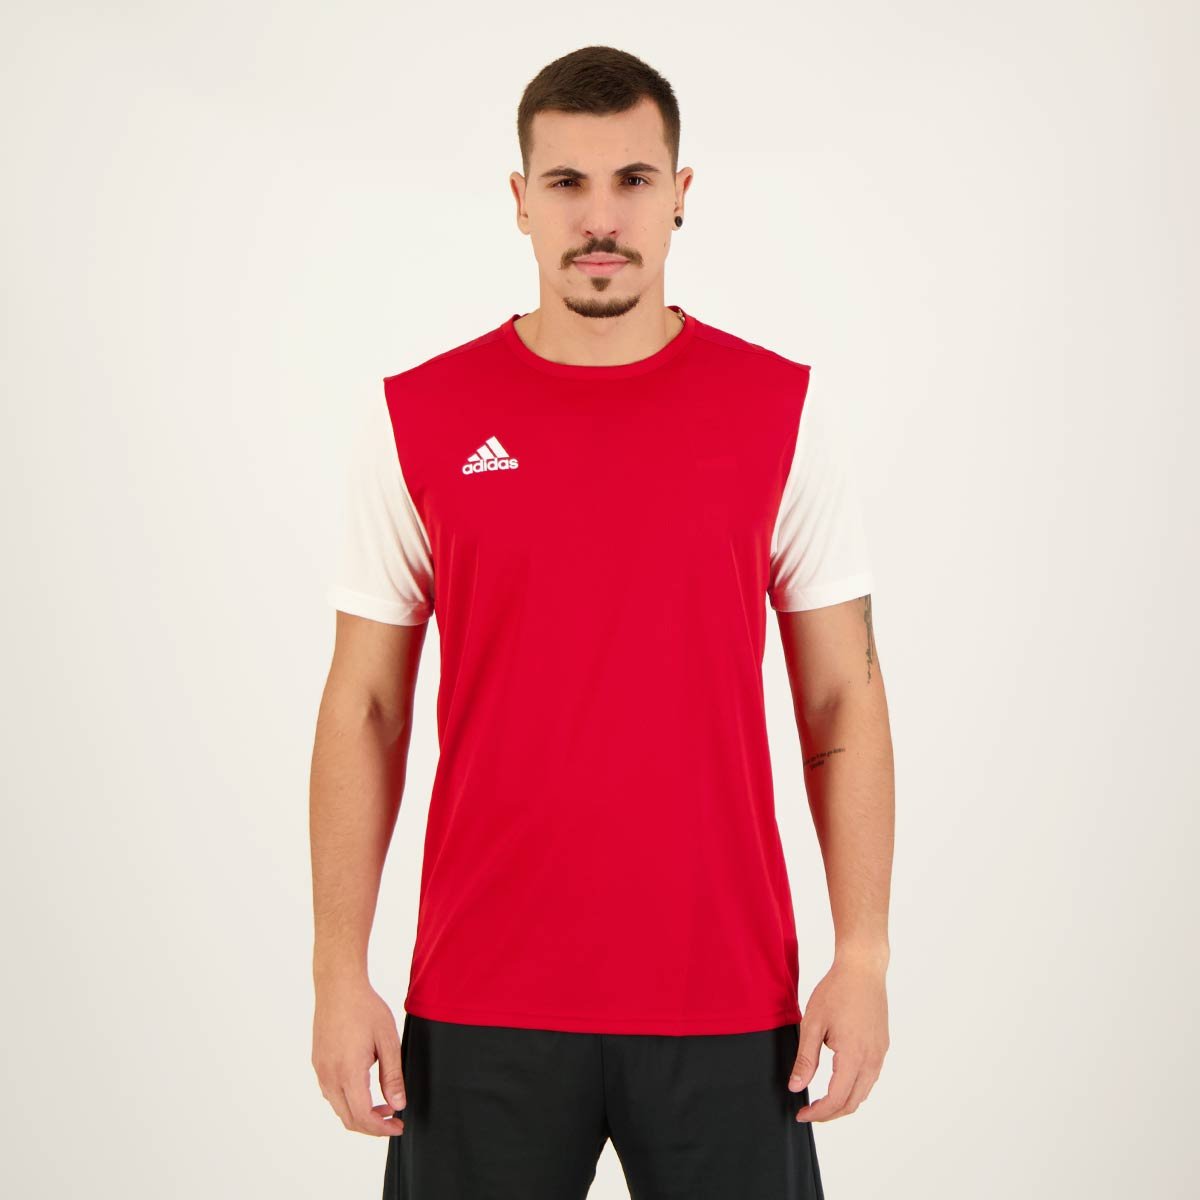 Camiseta Adidas Estro 19 Vermelha